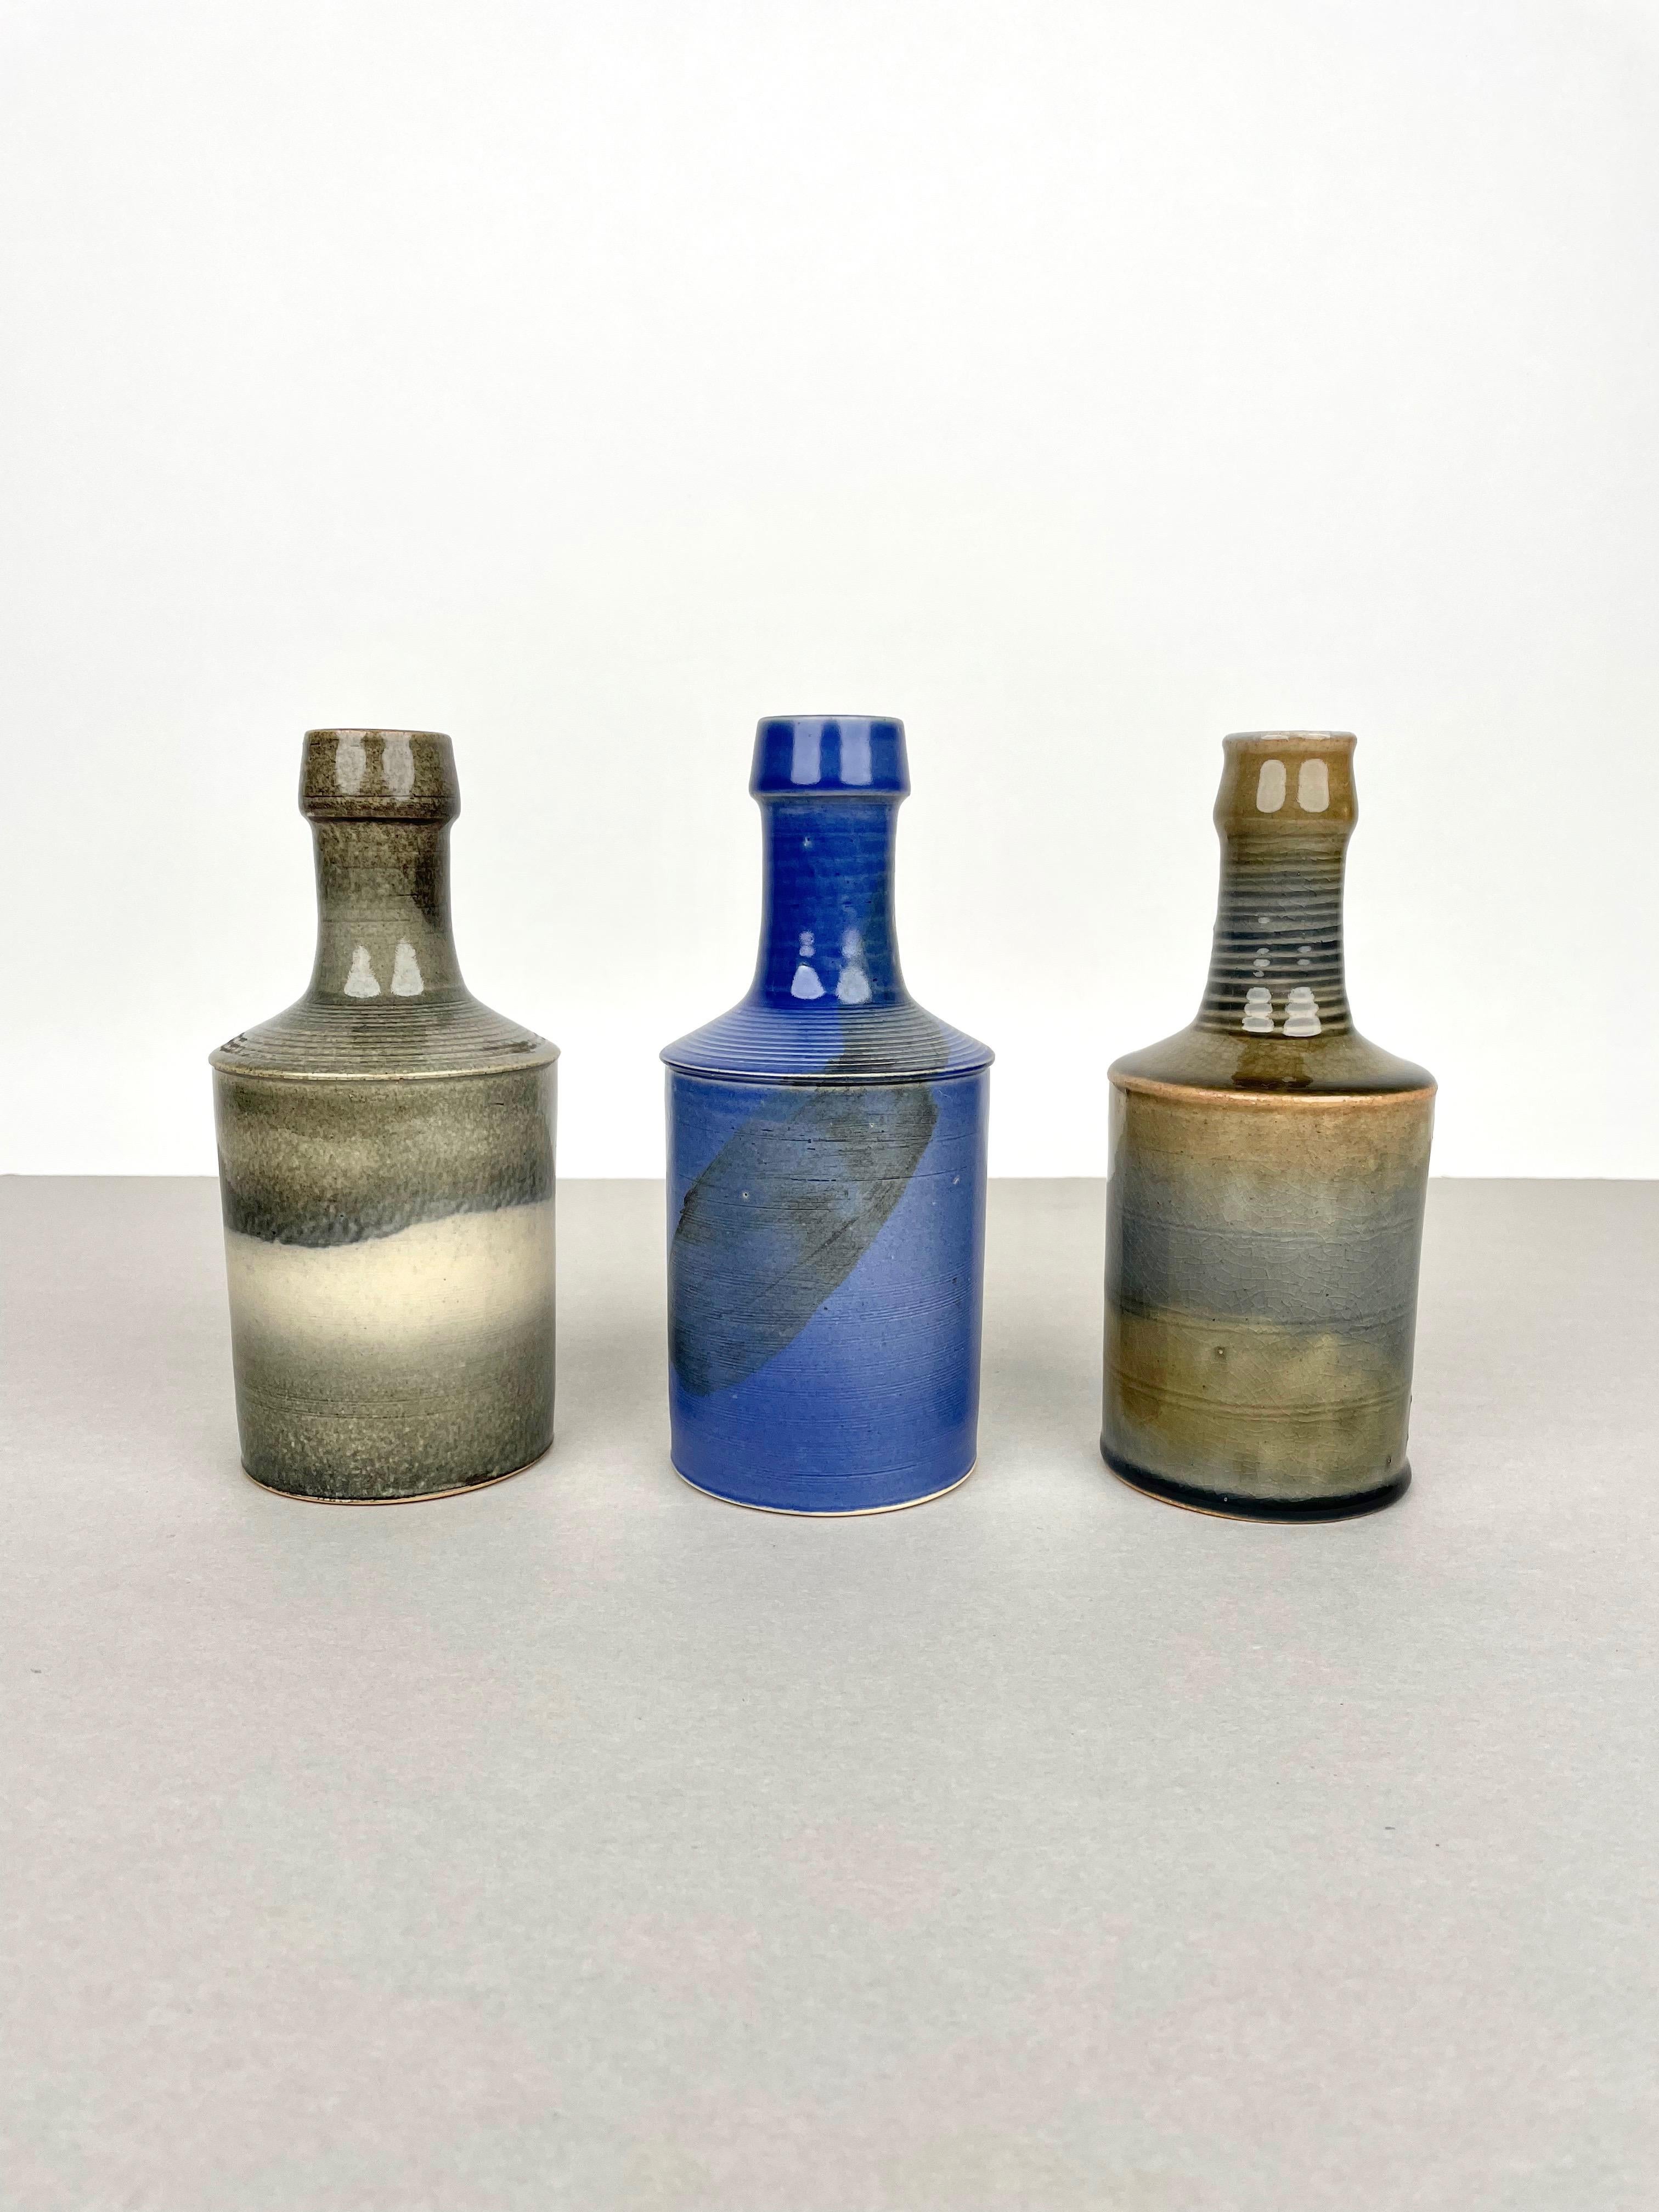 Ensemble de trois vases bouteilles en céramique laquée du designer italien Nanni Valentini pour Franco Bucci / Laboratorio Pesaro. 

Fabriqué en Italie dans les années 1960.